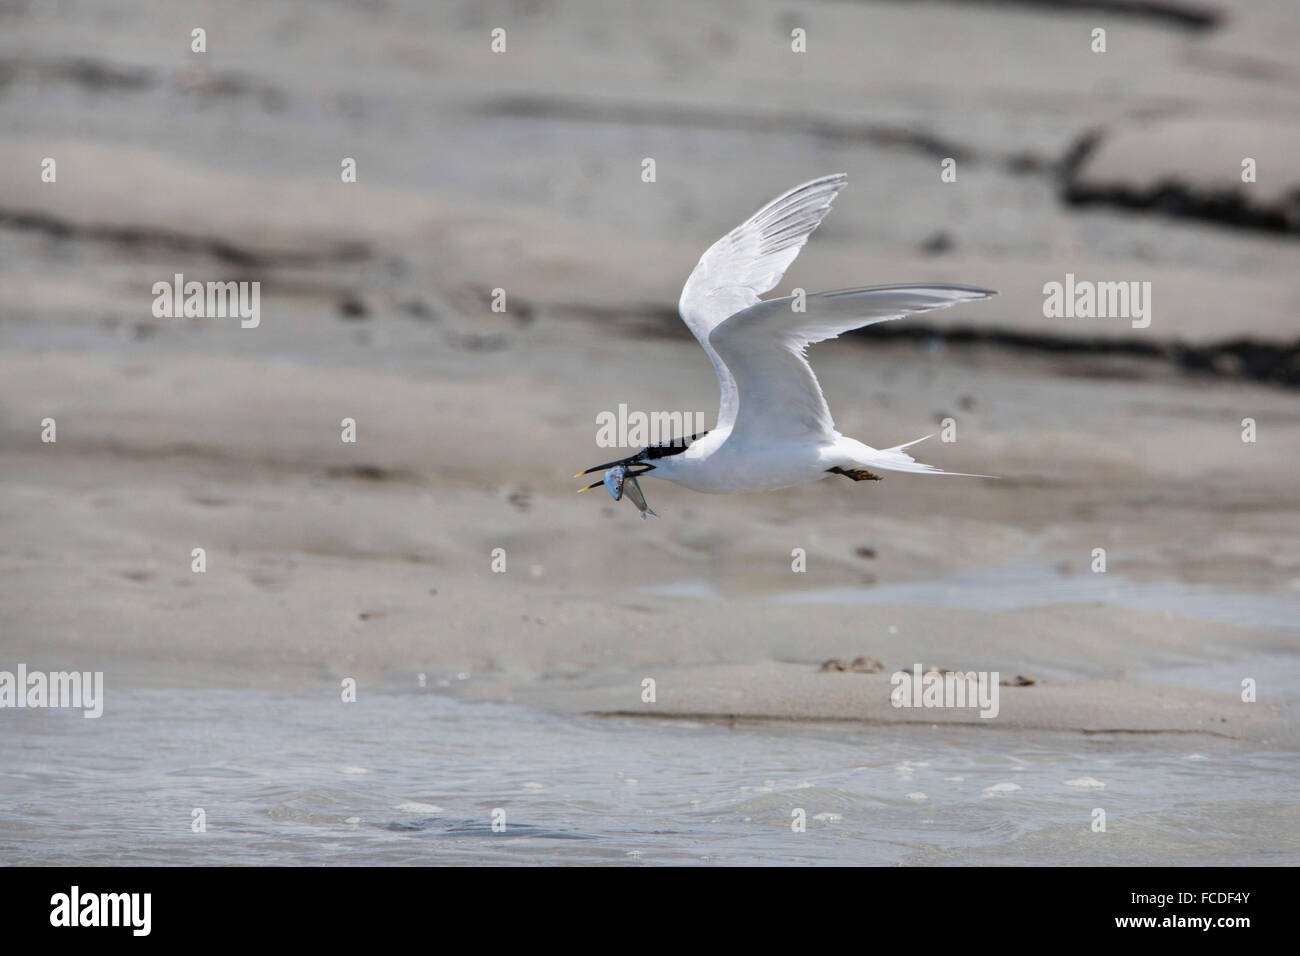 Pays-bas Breskens, Sterne, apporte le poisson (lançon) à nid, situé dans une colonie sur la plage de sable de la rivière Westerschelde vasières Banque D'Images